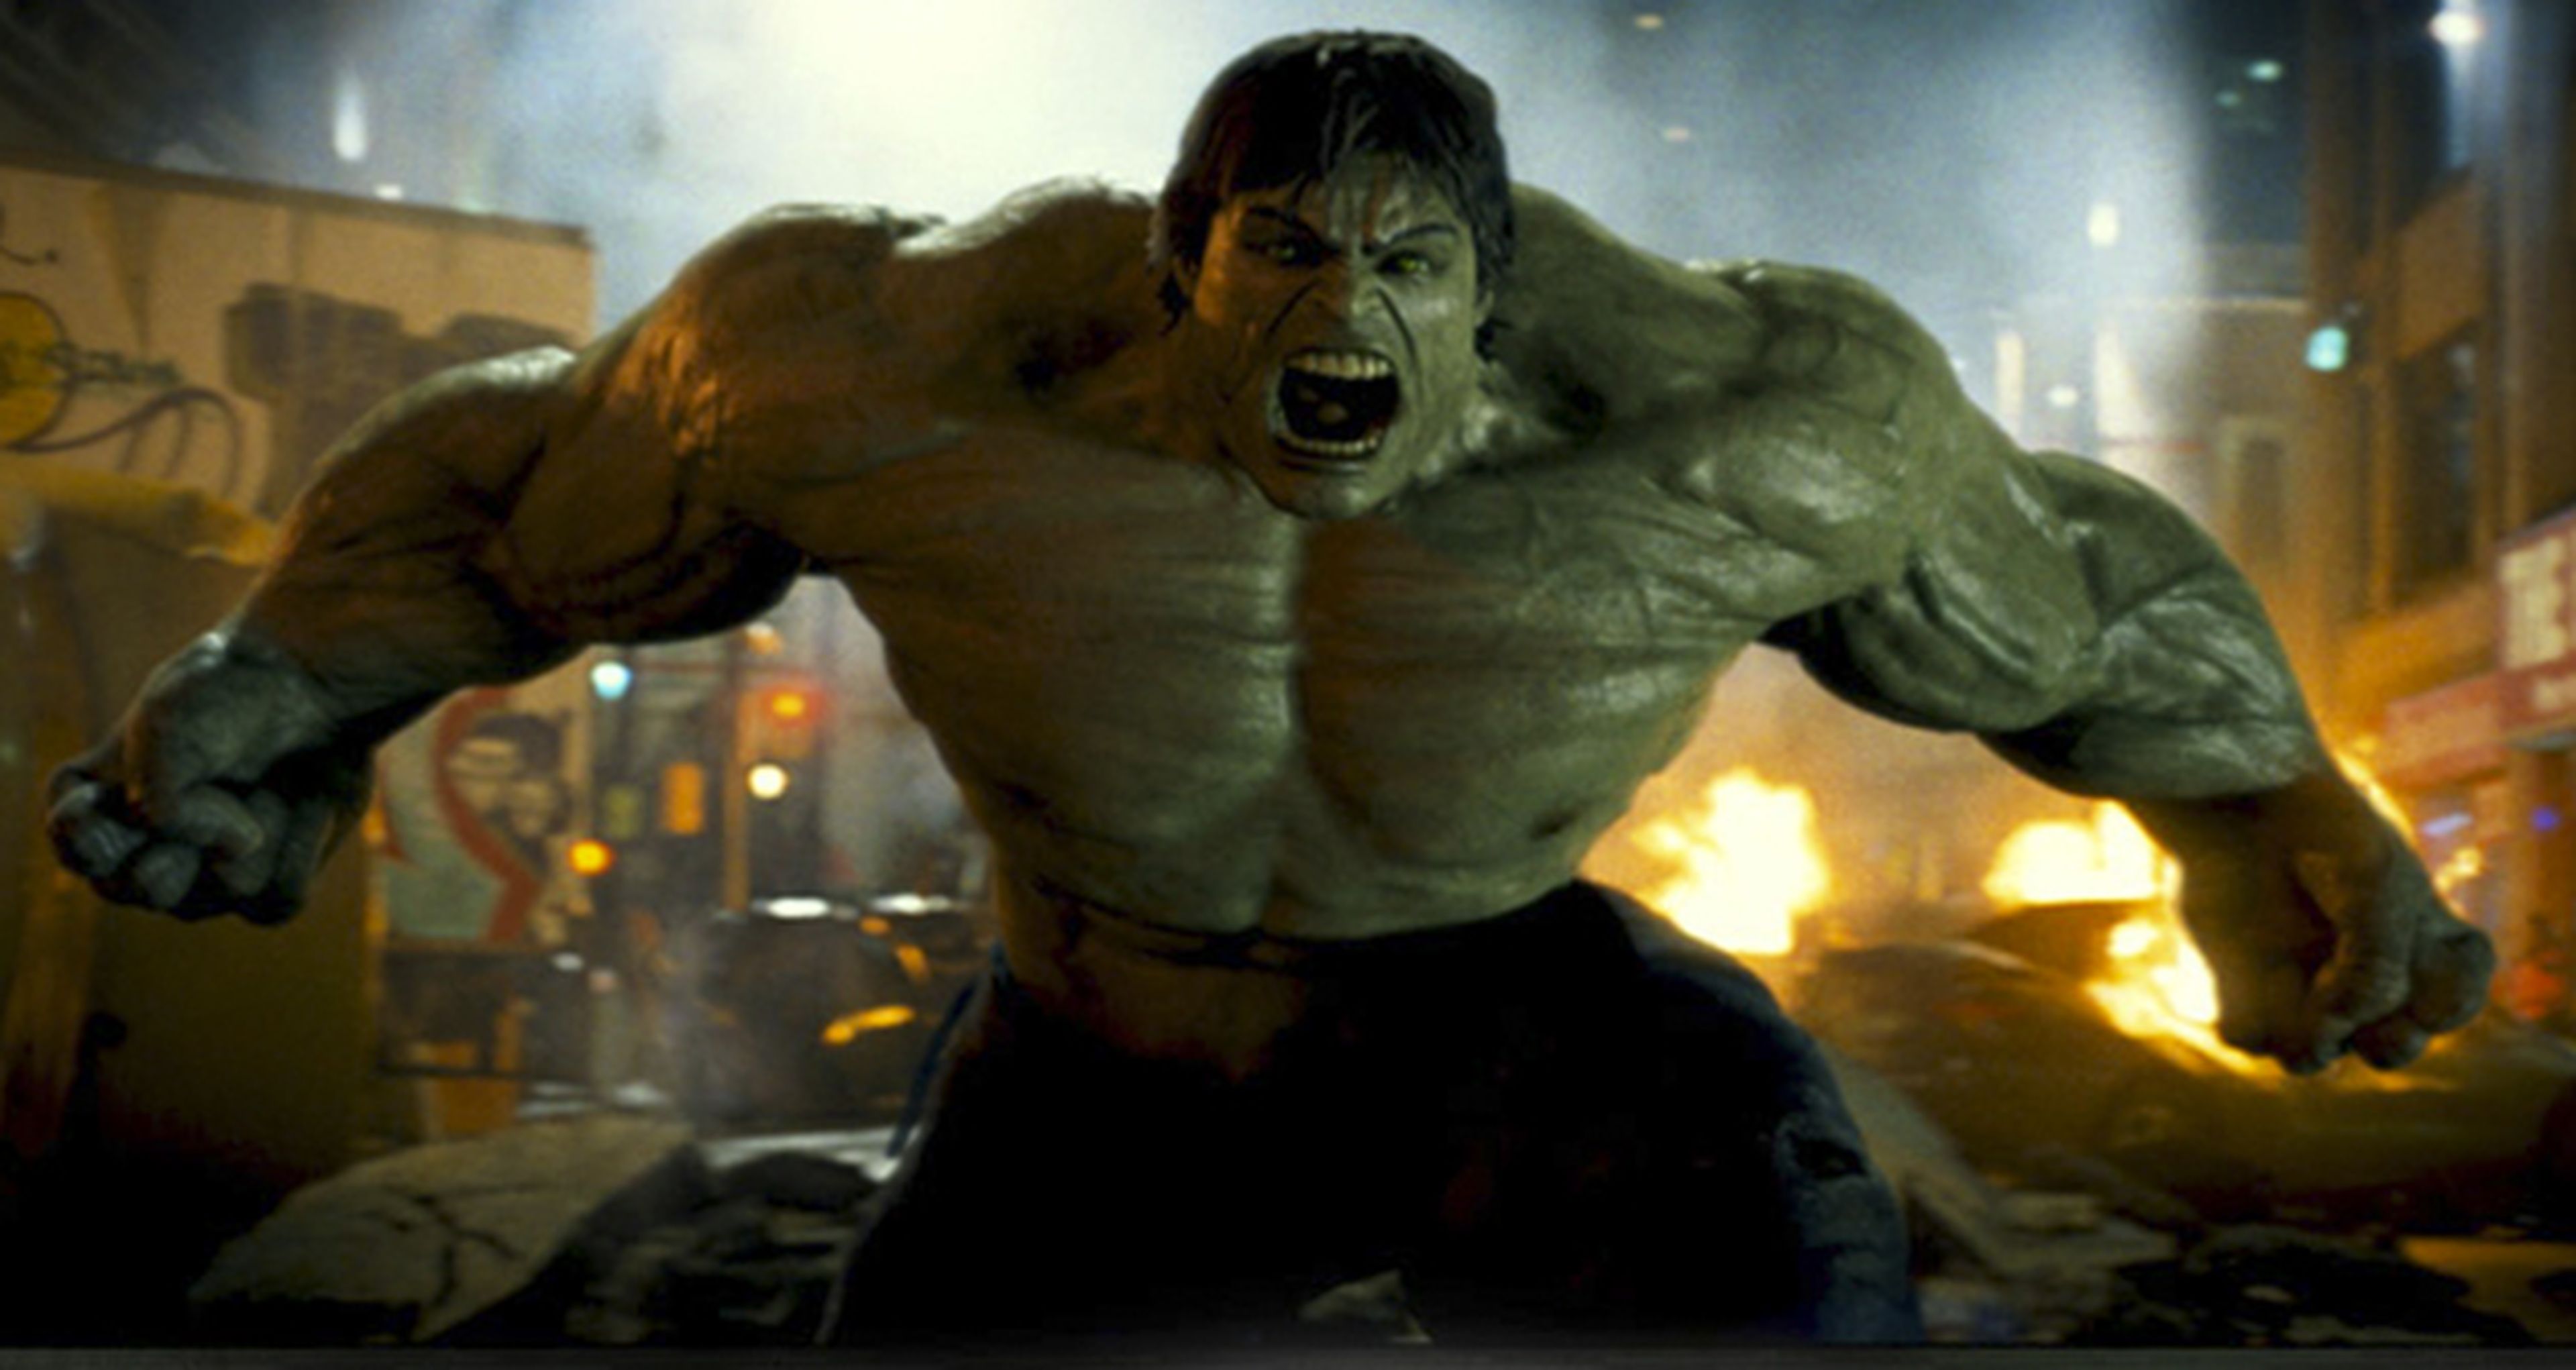 Cine de superhéroes: crítica de El increíble Hulk